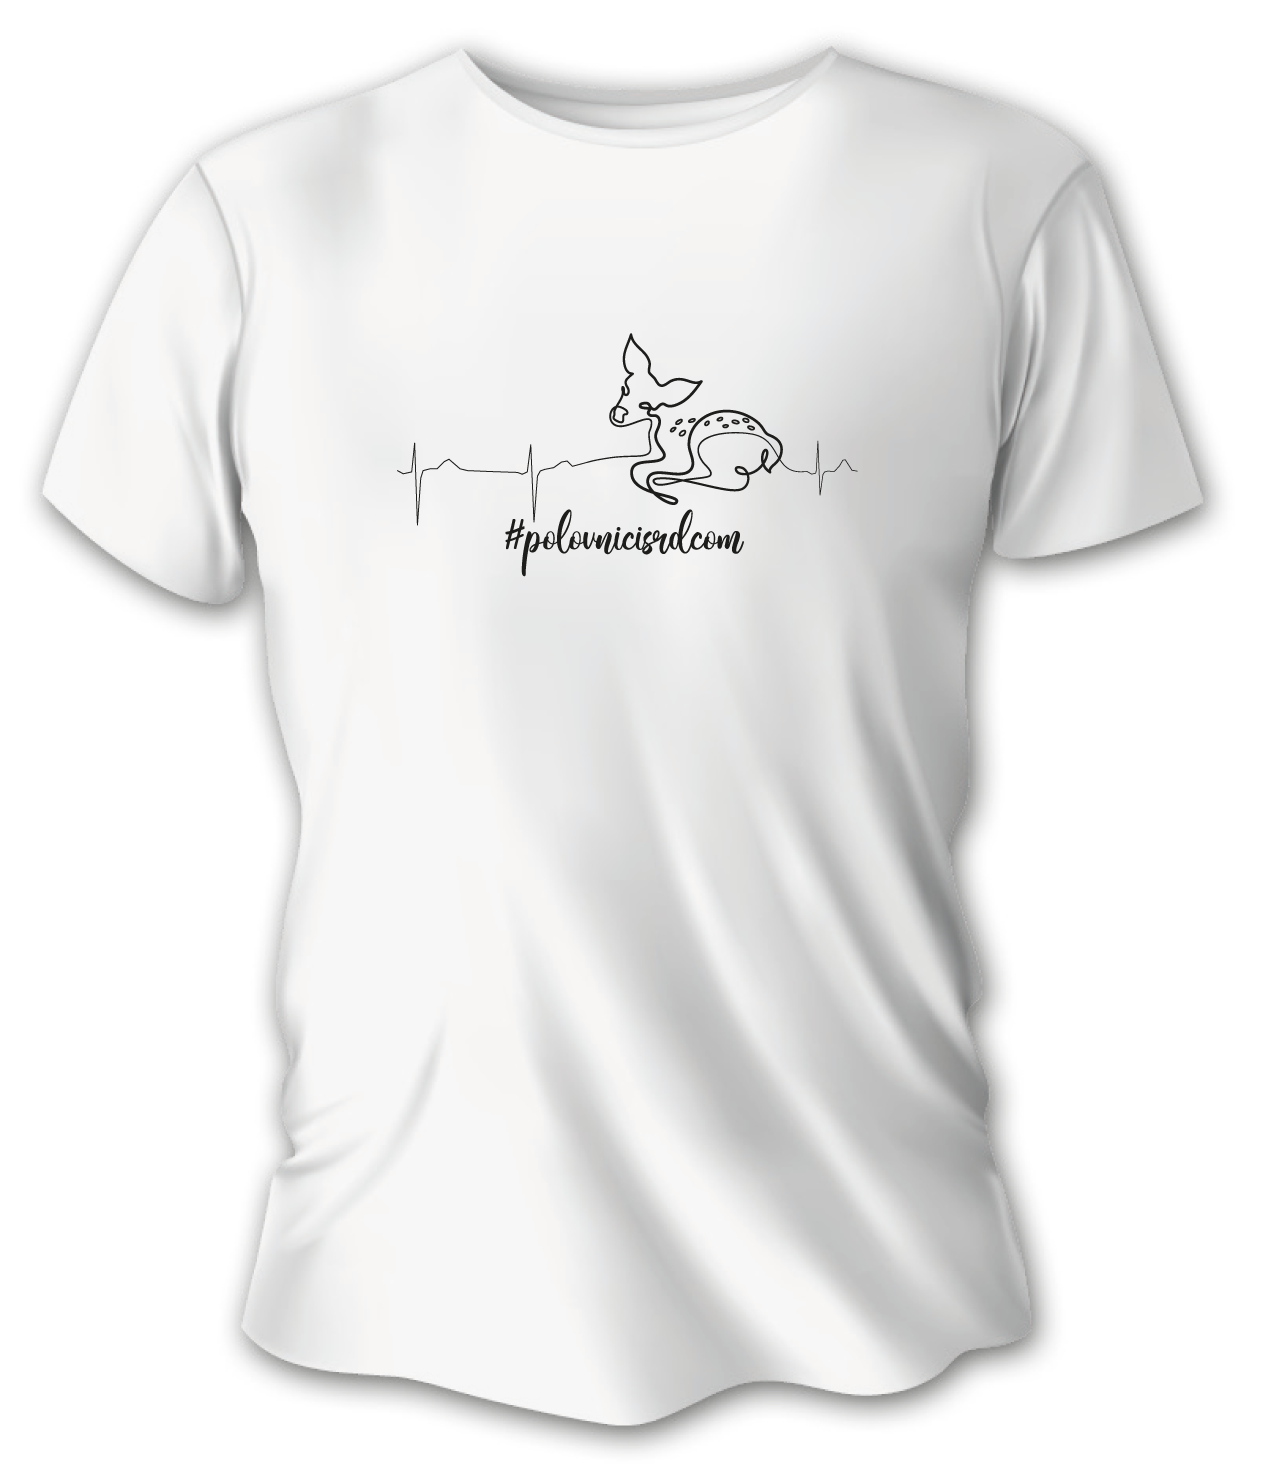 Dámske poľovnícke tričko TETRAO polovnicisrdcom - srna - biele  M